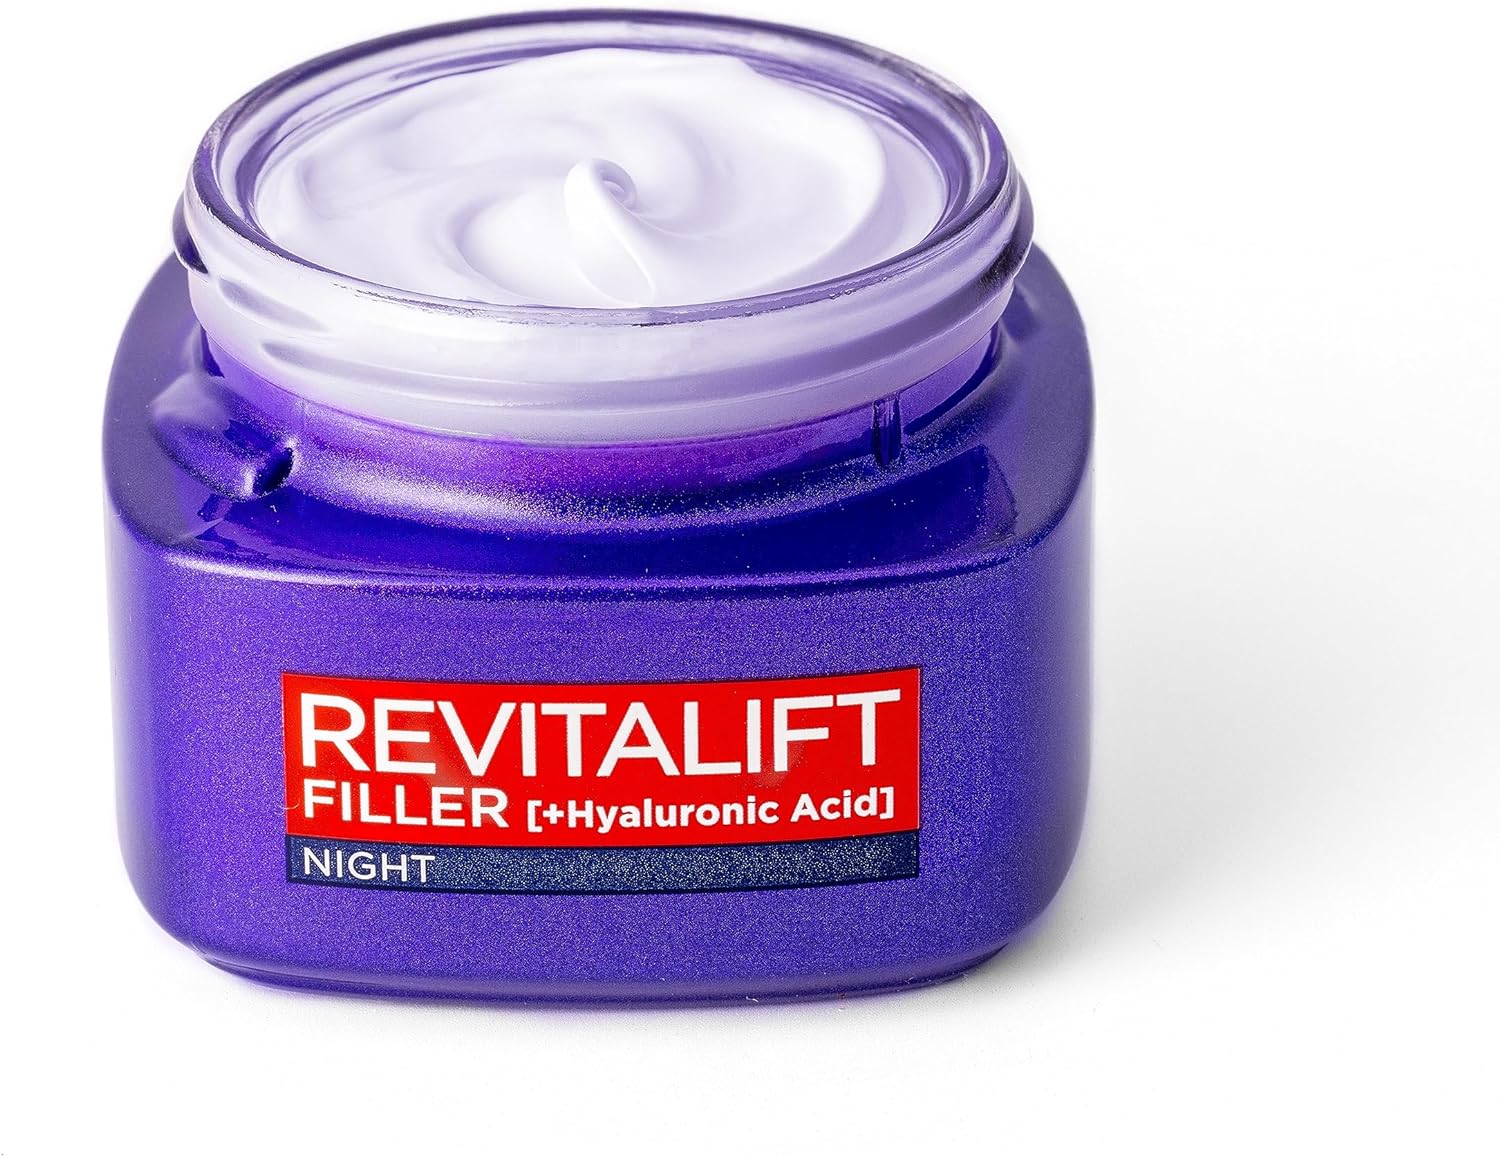 L'Oreal Revitalift Filler Hyaluronic Acid Anti-Ageing Night Cream